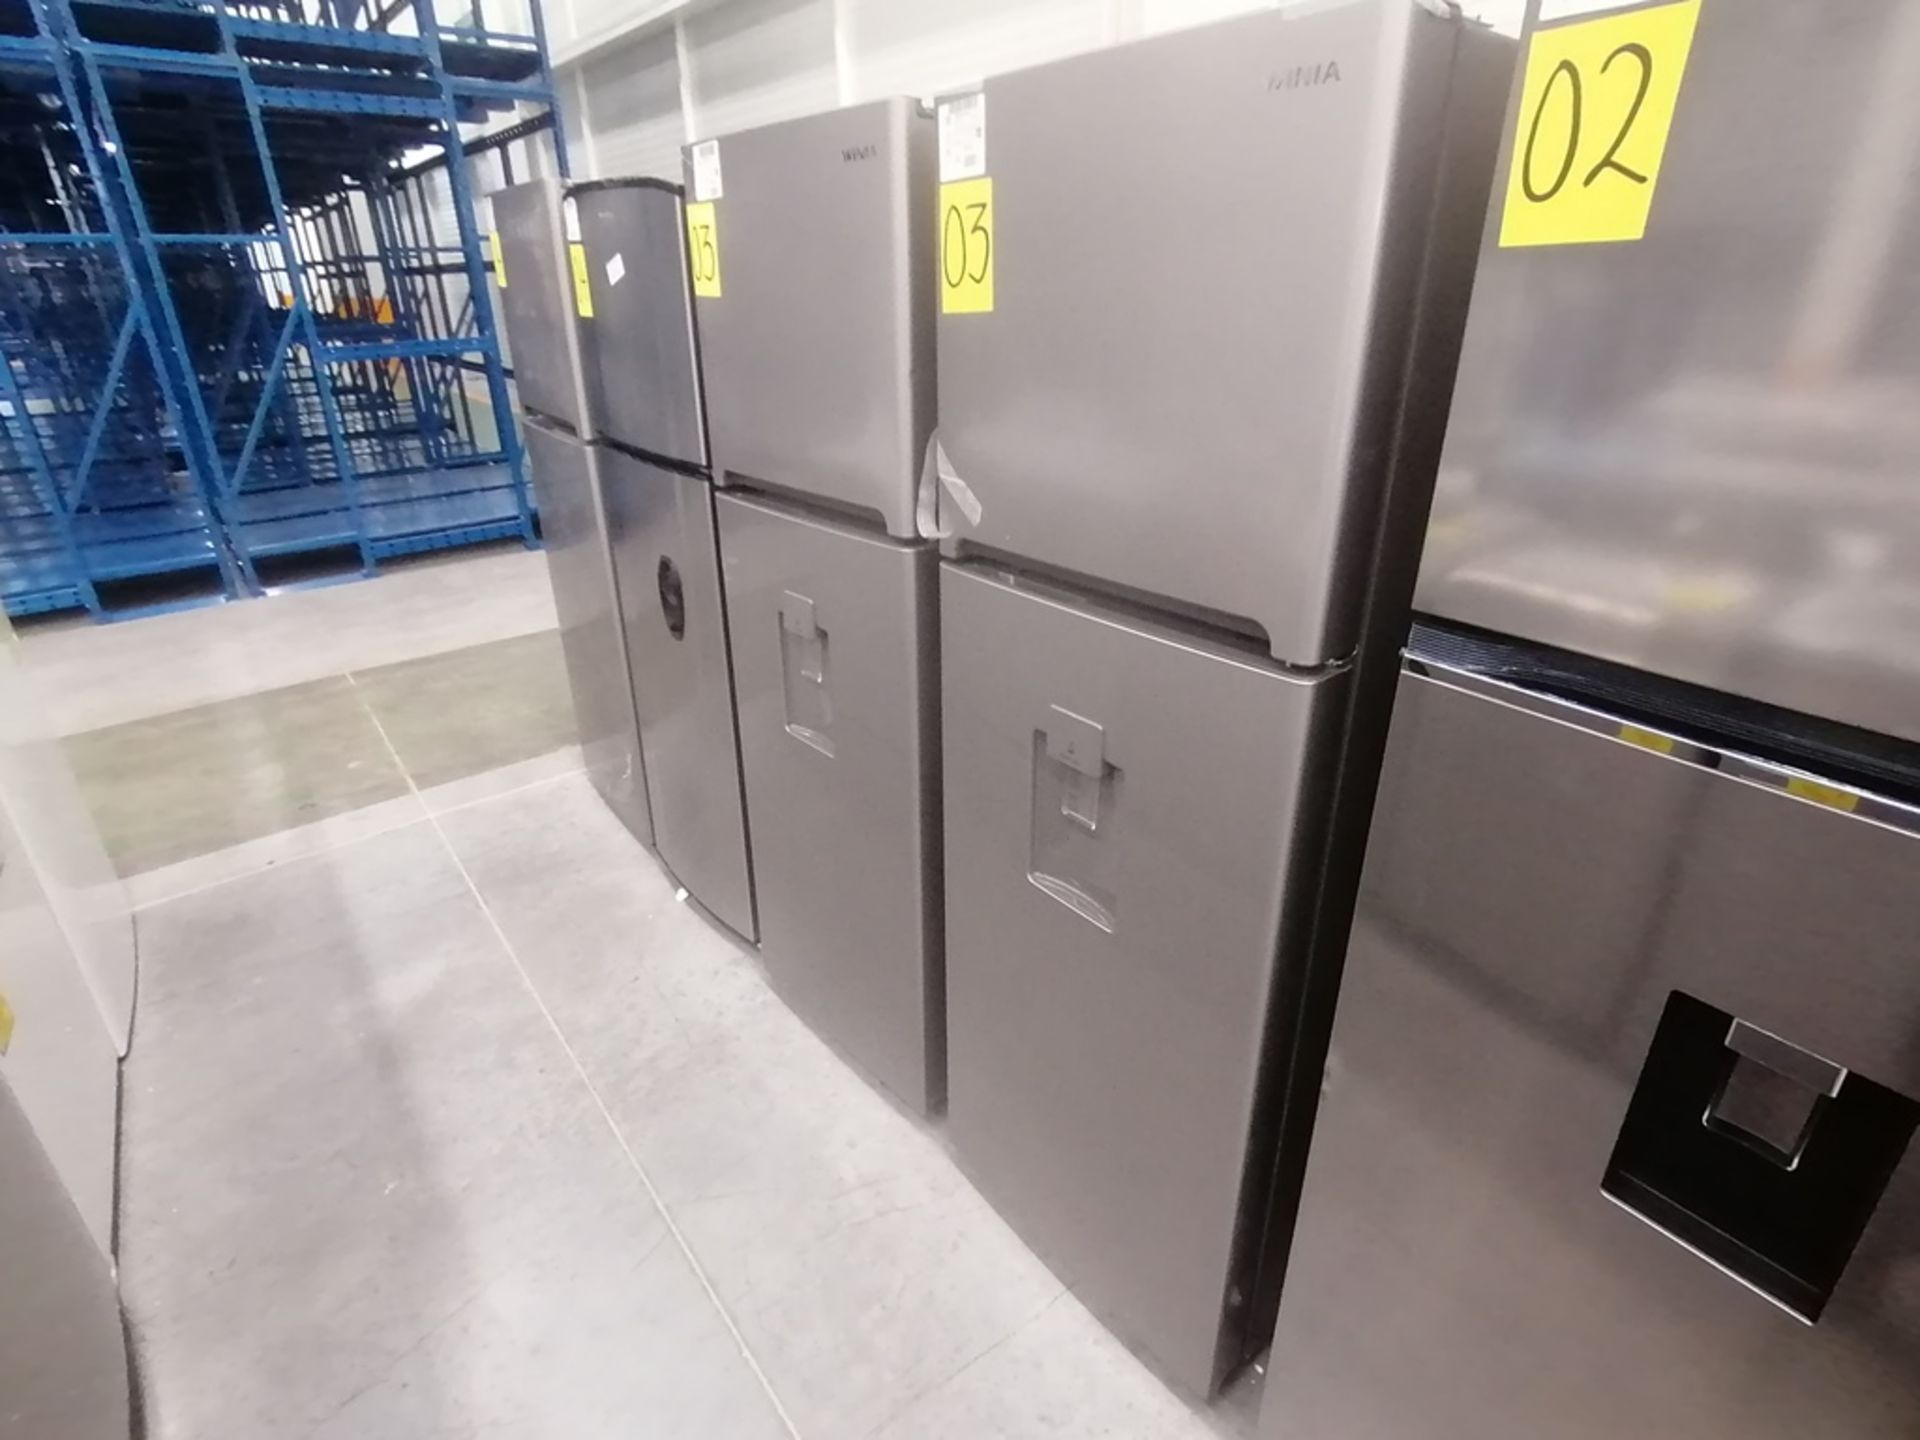 Lote de 2 refrigeradores incluye: 1 Refrigerador con dispensador de agua, Marca Winia, Modelo DFR32